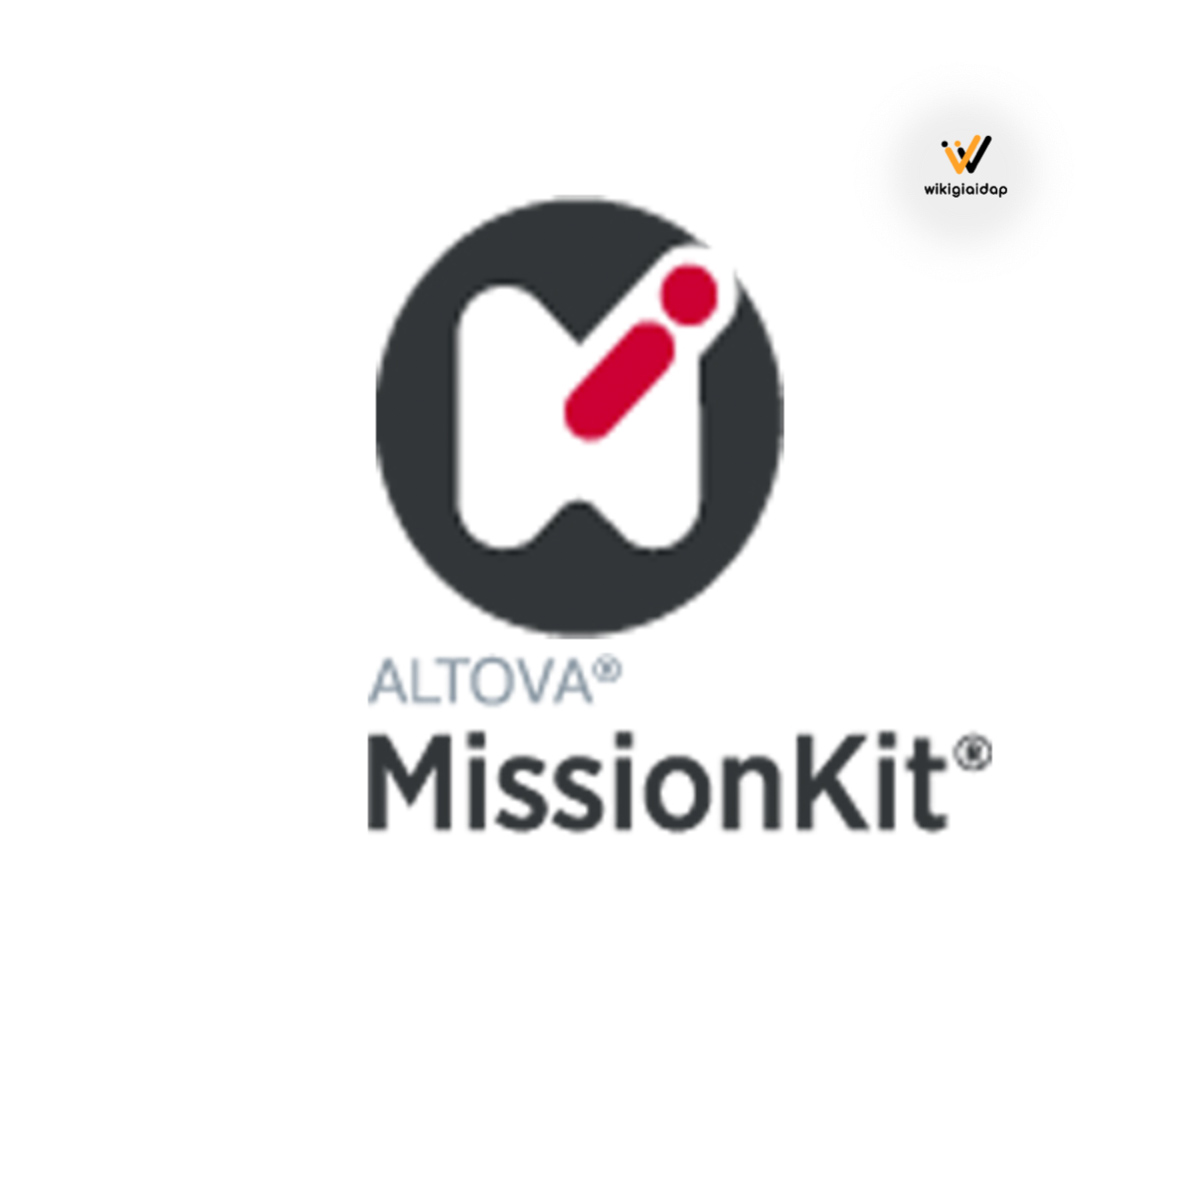 Giới thiệu về phần mềm Altova MissionKit